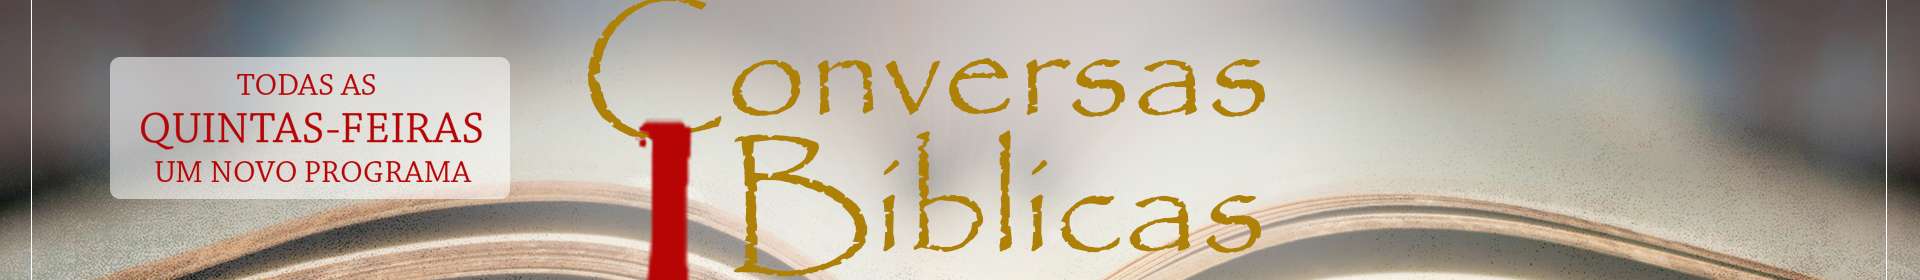 Conversas Bíblicas: Histórico da Doutrina - Parte 3